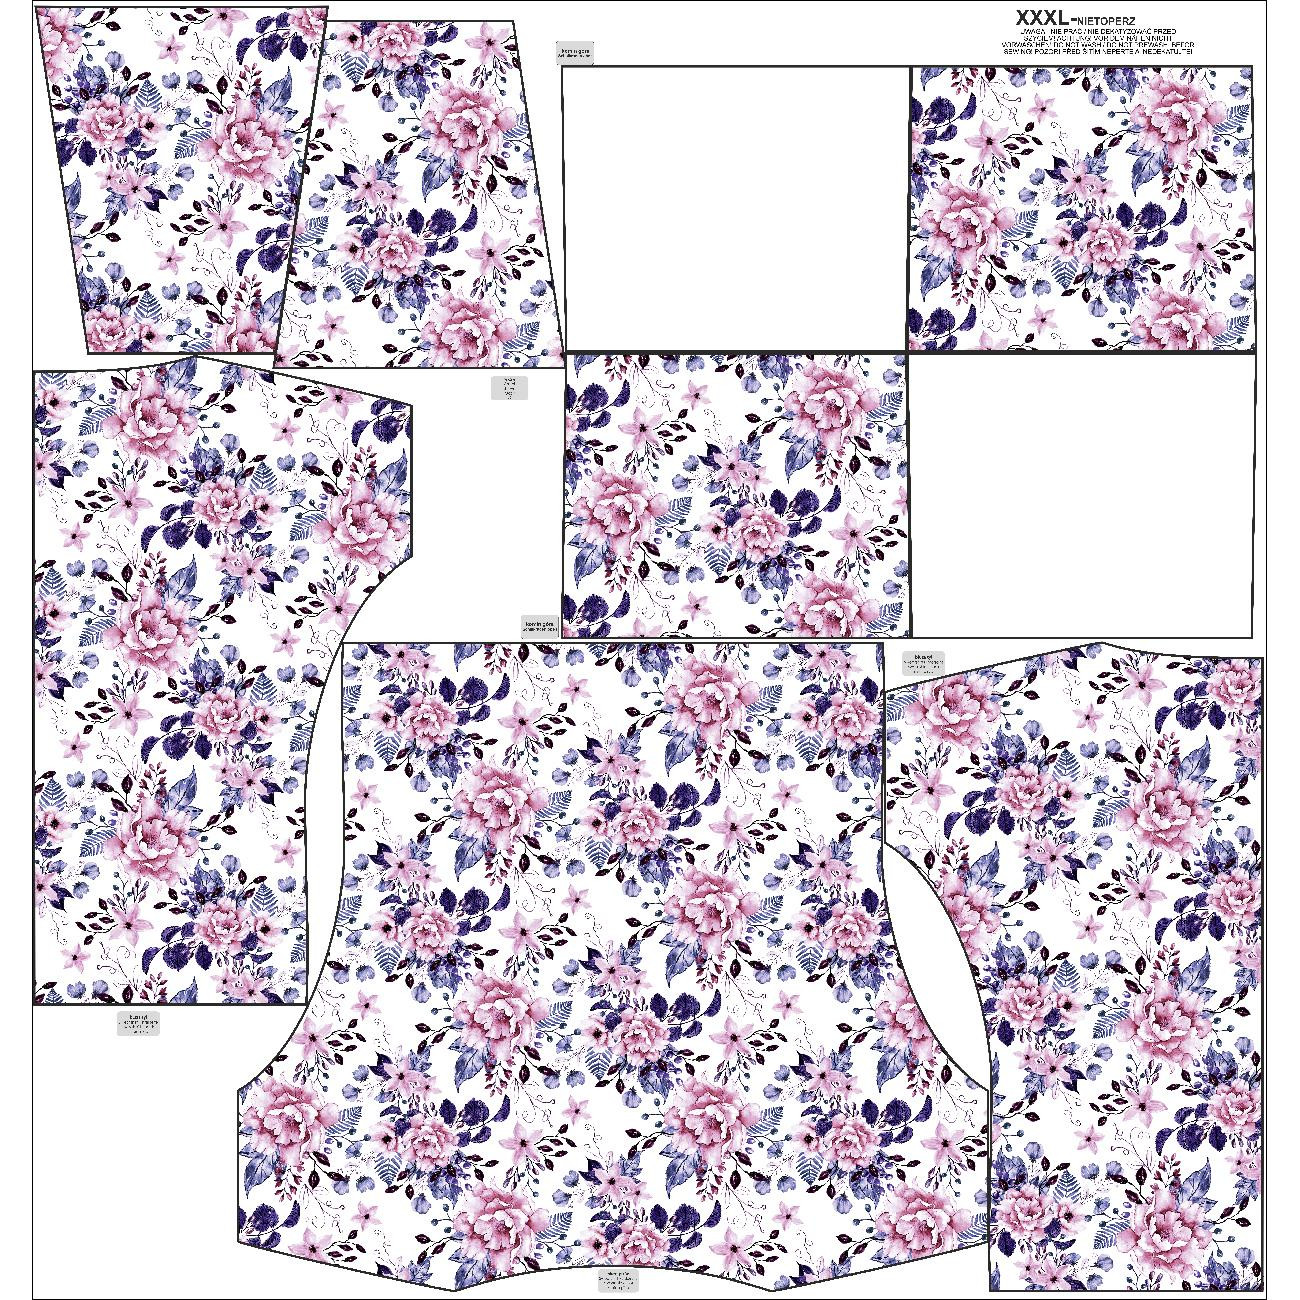 SNOOD SWEATSHIRT (FURIA) - WILD ROSE FLOWERS PAT. 1 (BLOOMING MEADOW) (Very Peri) - looped knit fabric 